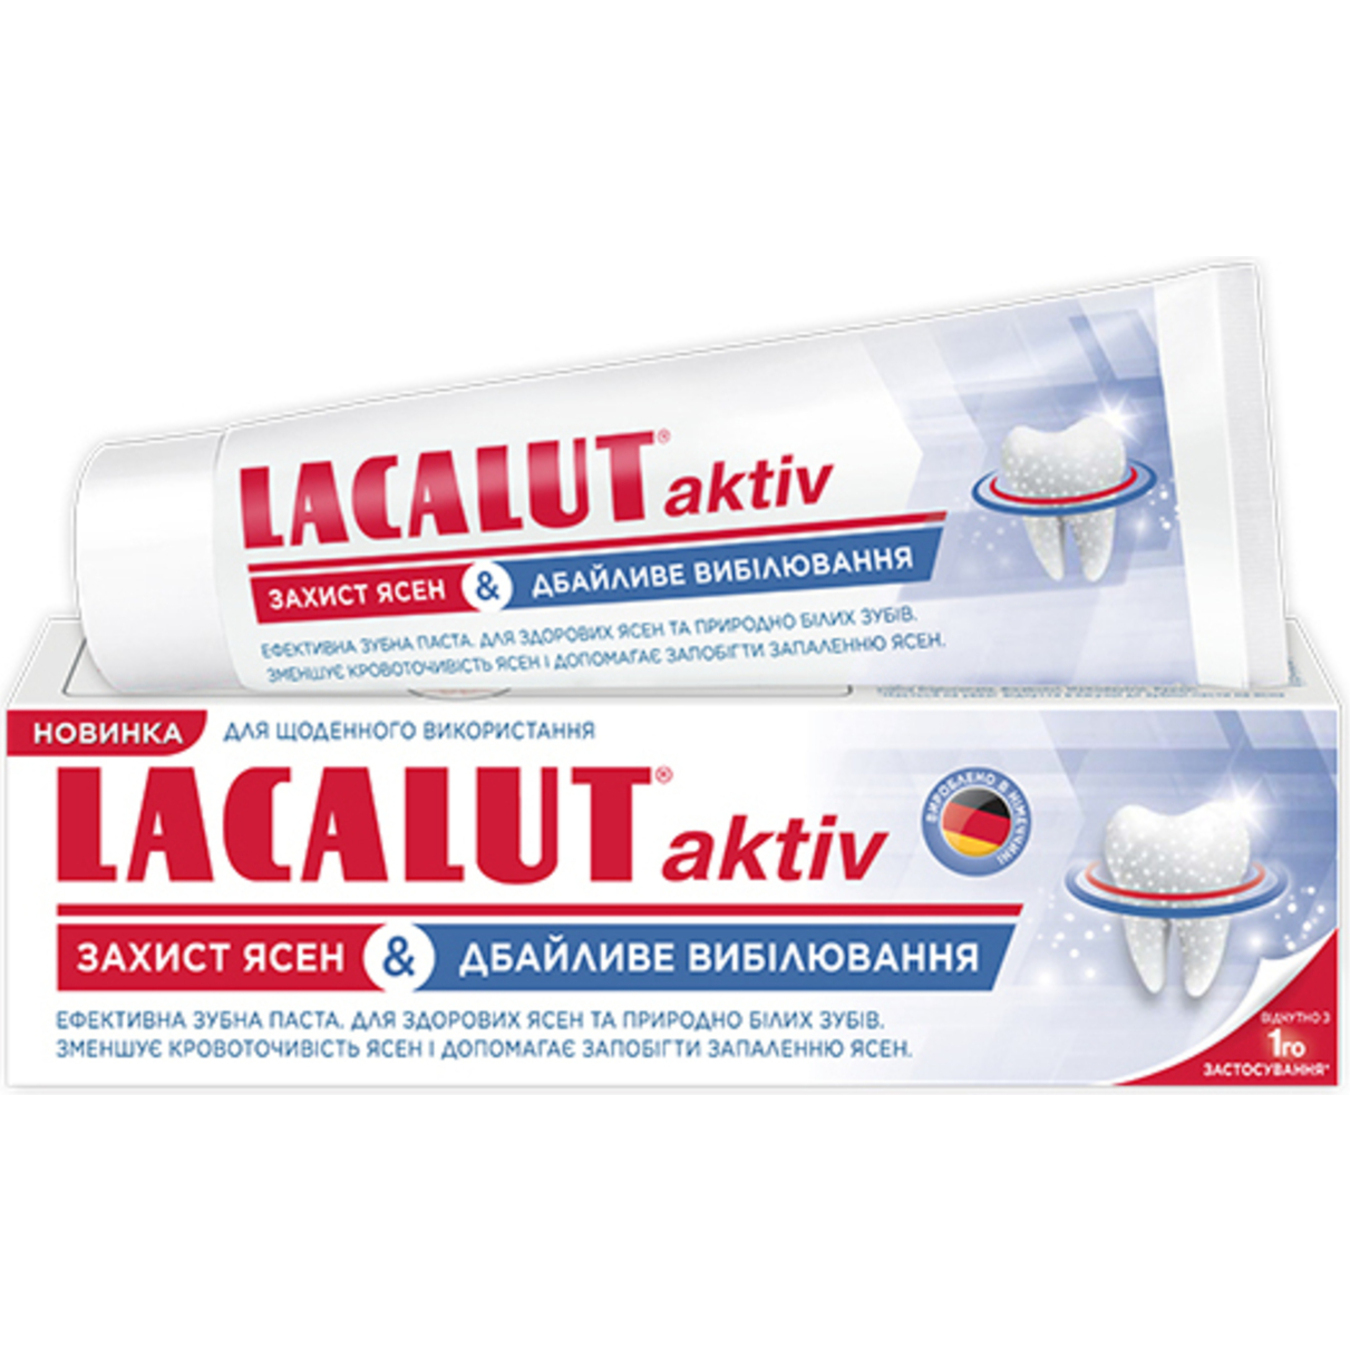 Зубна паста Lacalut Актив захист ясен та дбайливе відбілювання 75мл